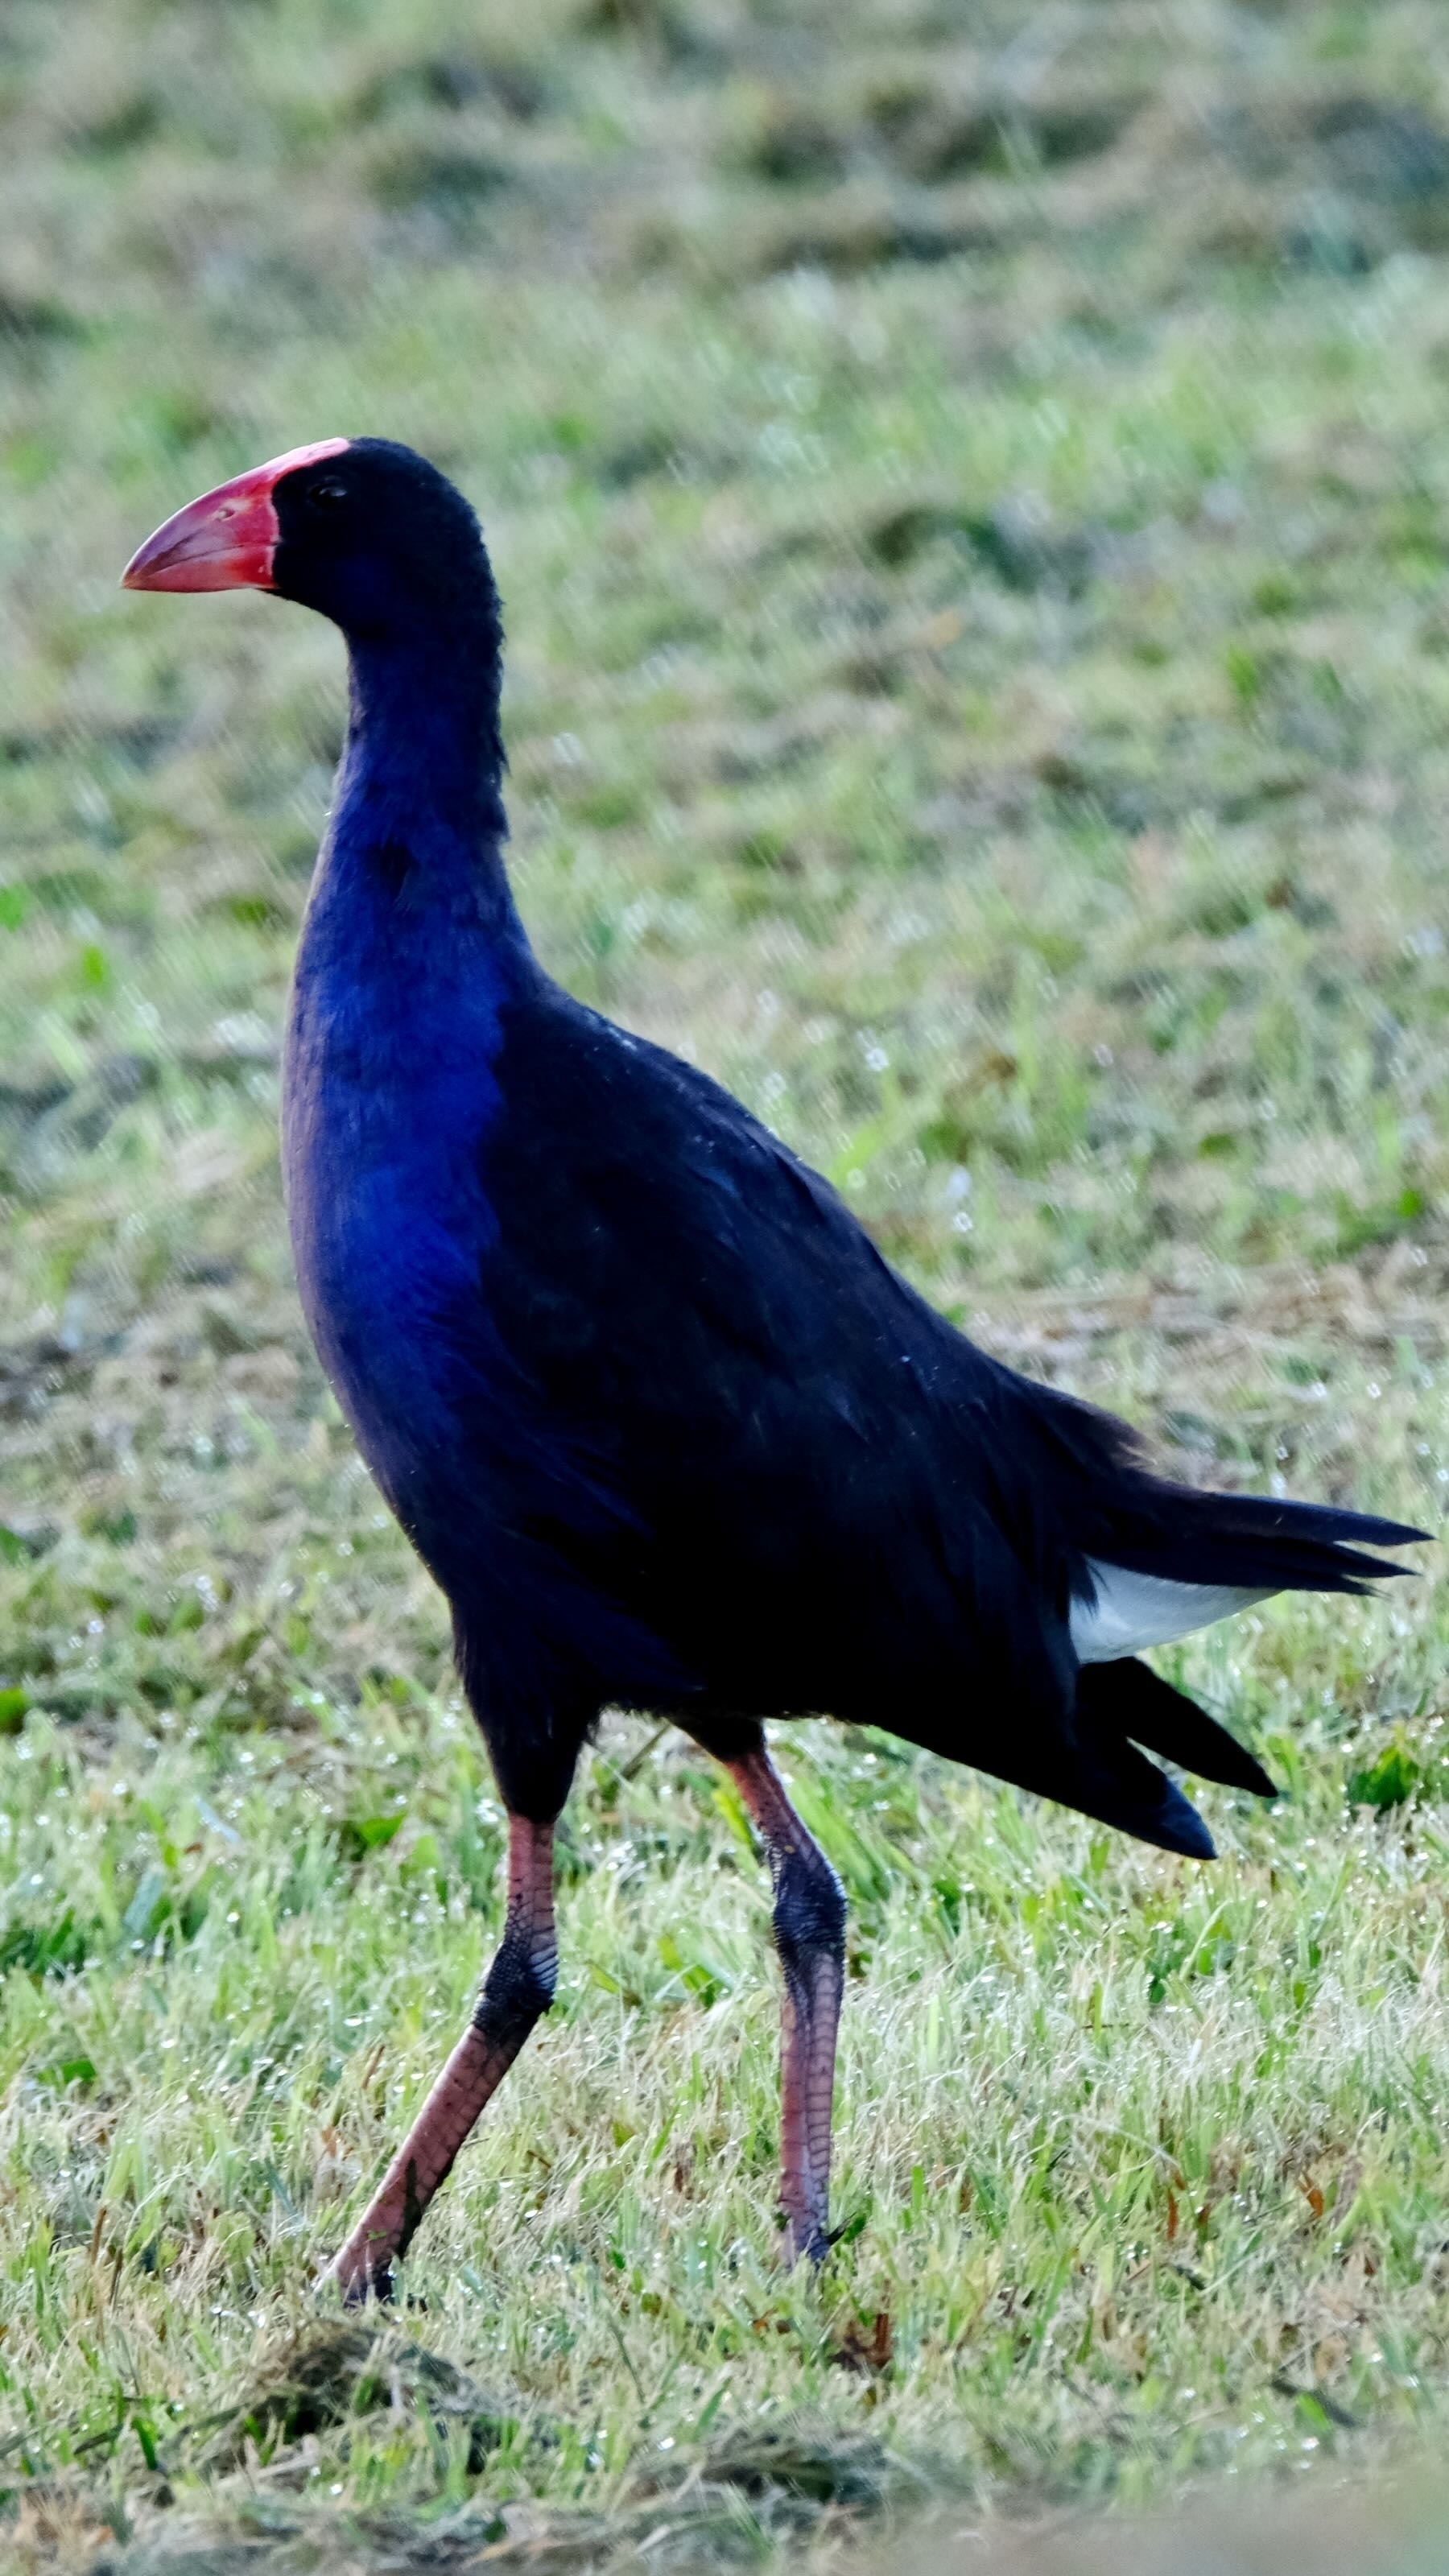 Striking large blue bird with red beak, walking on grass. 